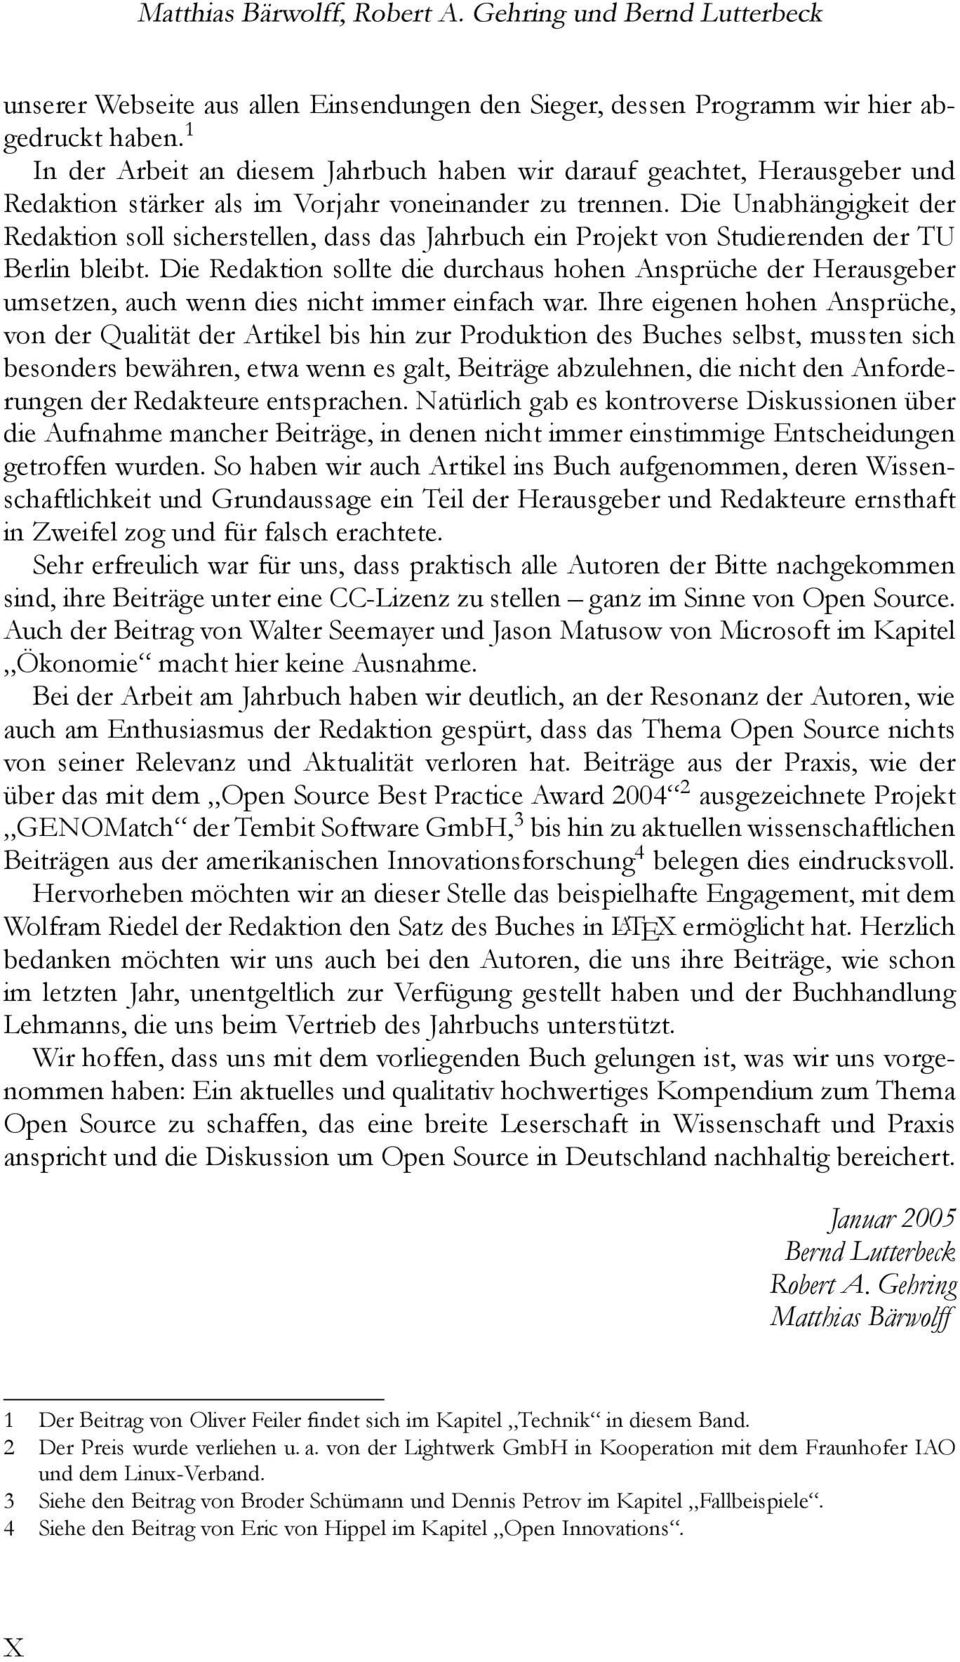 Die Unabhängigkeit der Redaktion soll sicherstellen, dass das Jahrbuch ein Projekt von Studierenden der TU Berlin bleibt.